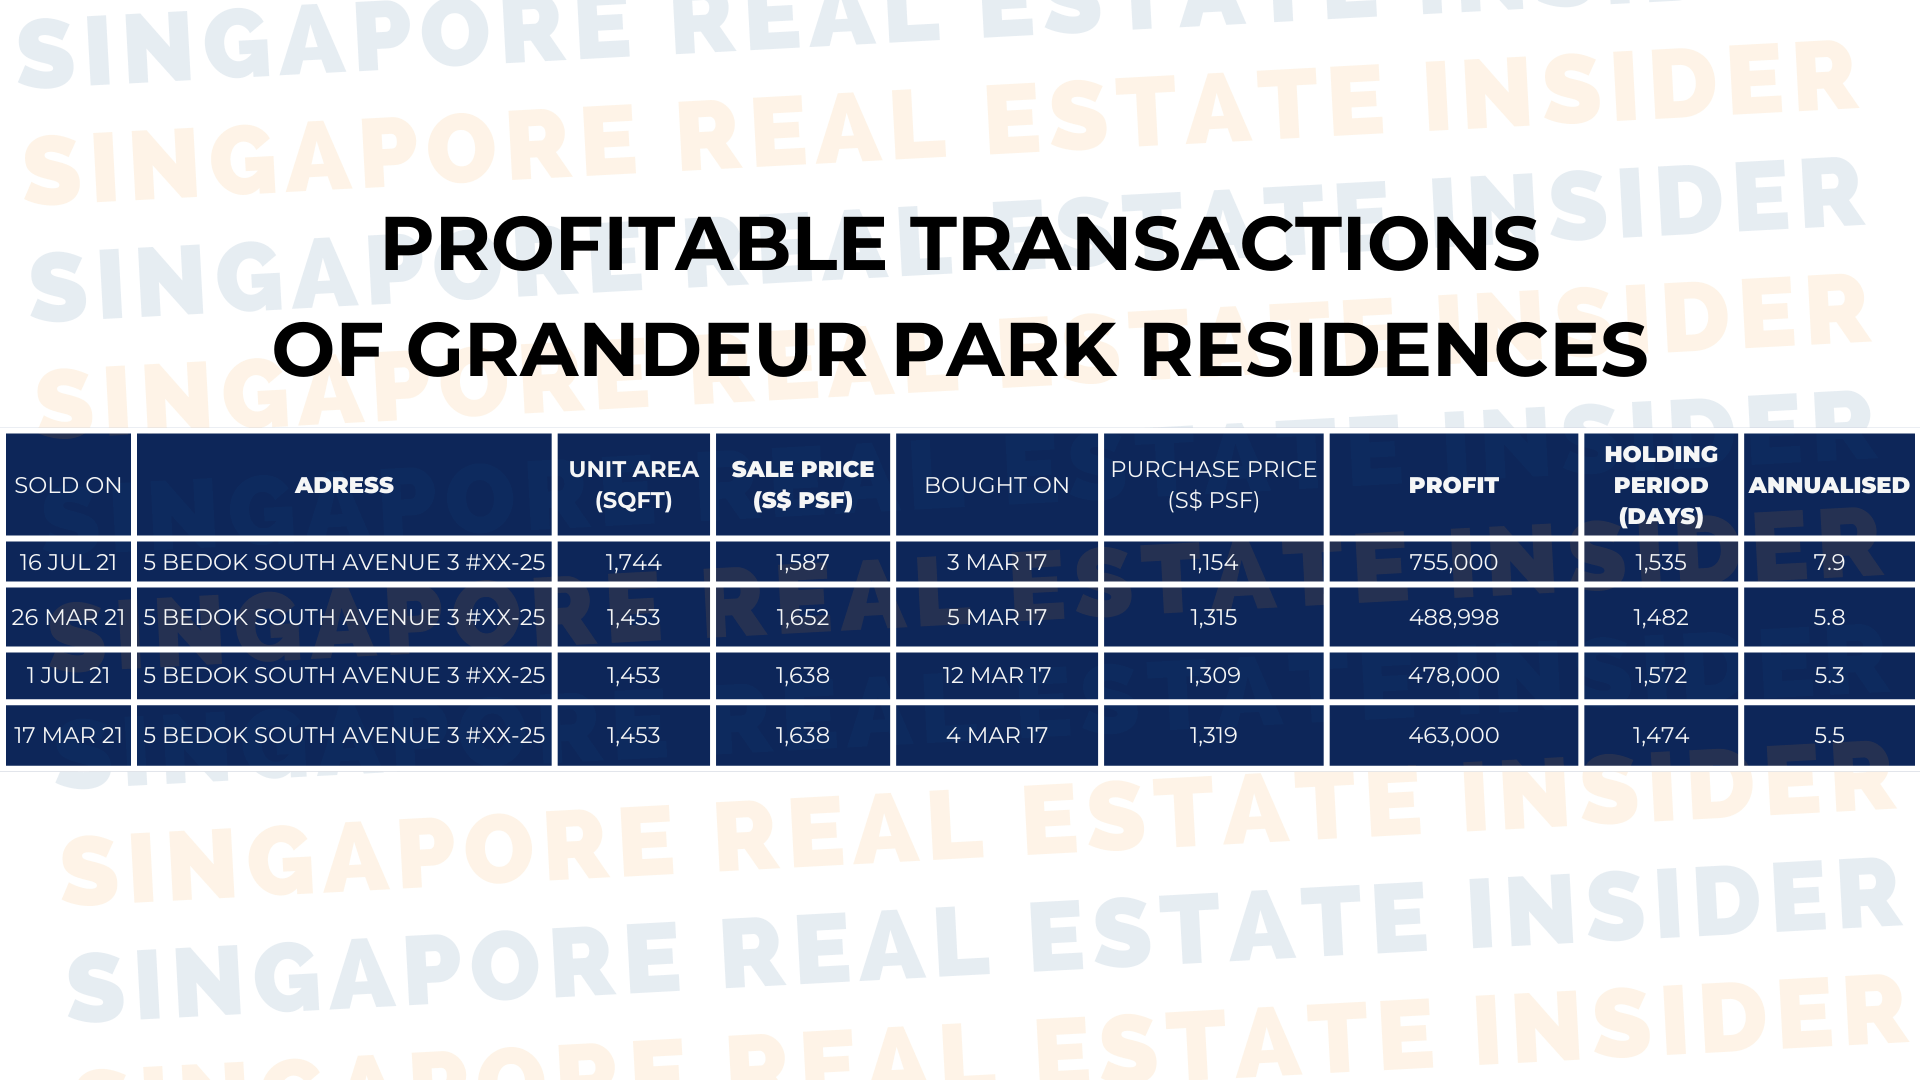 Grandeur Park Residences - Profitable Transactions